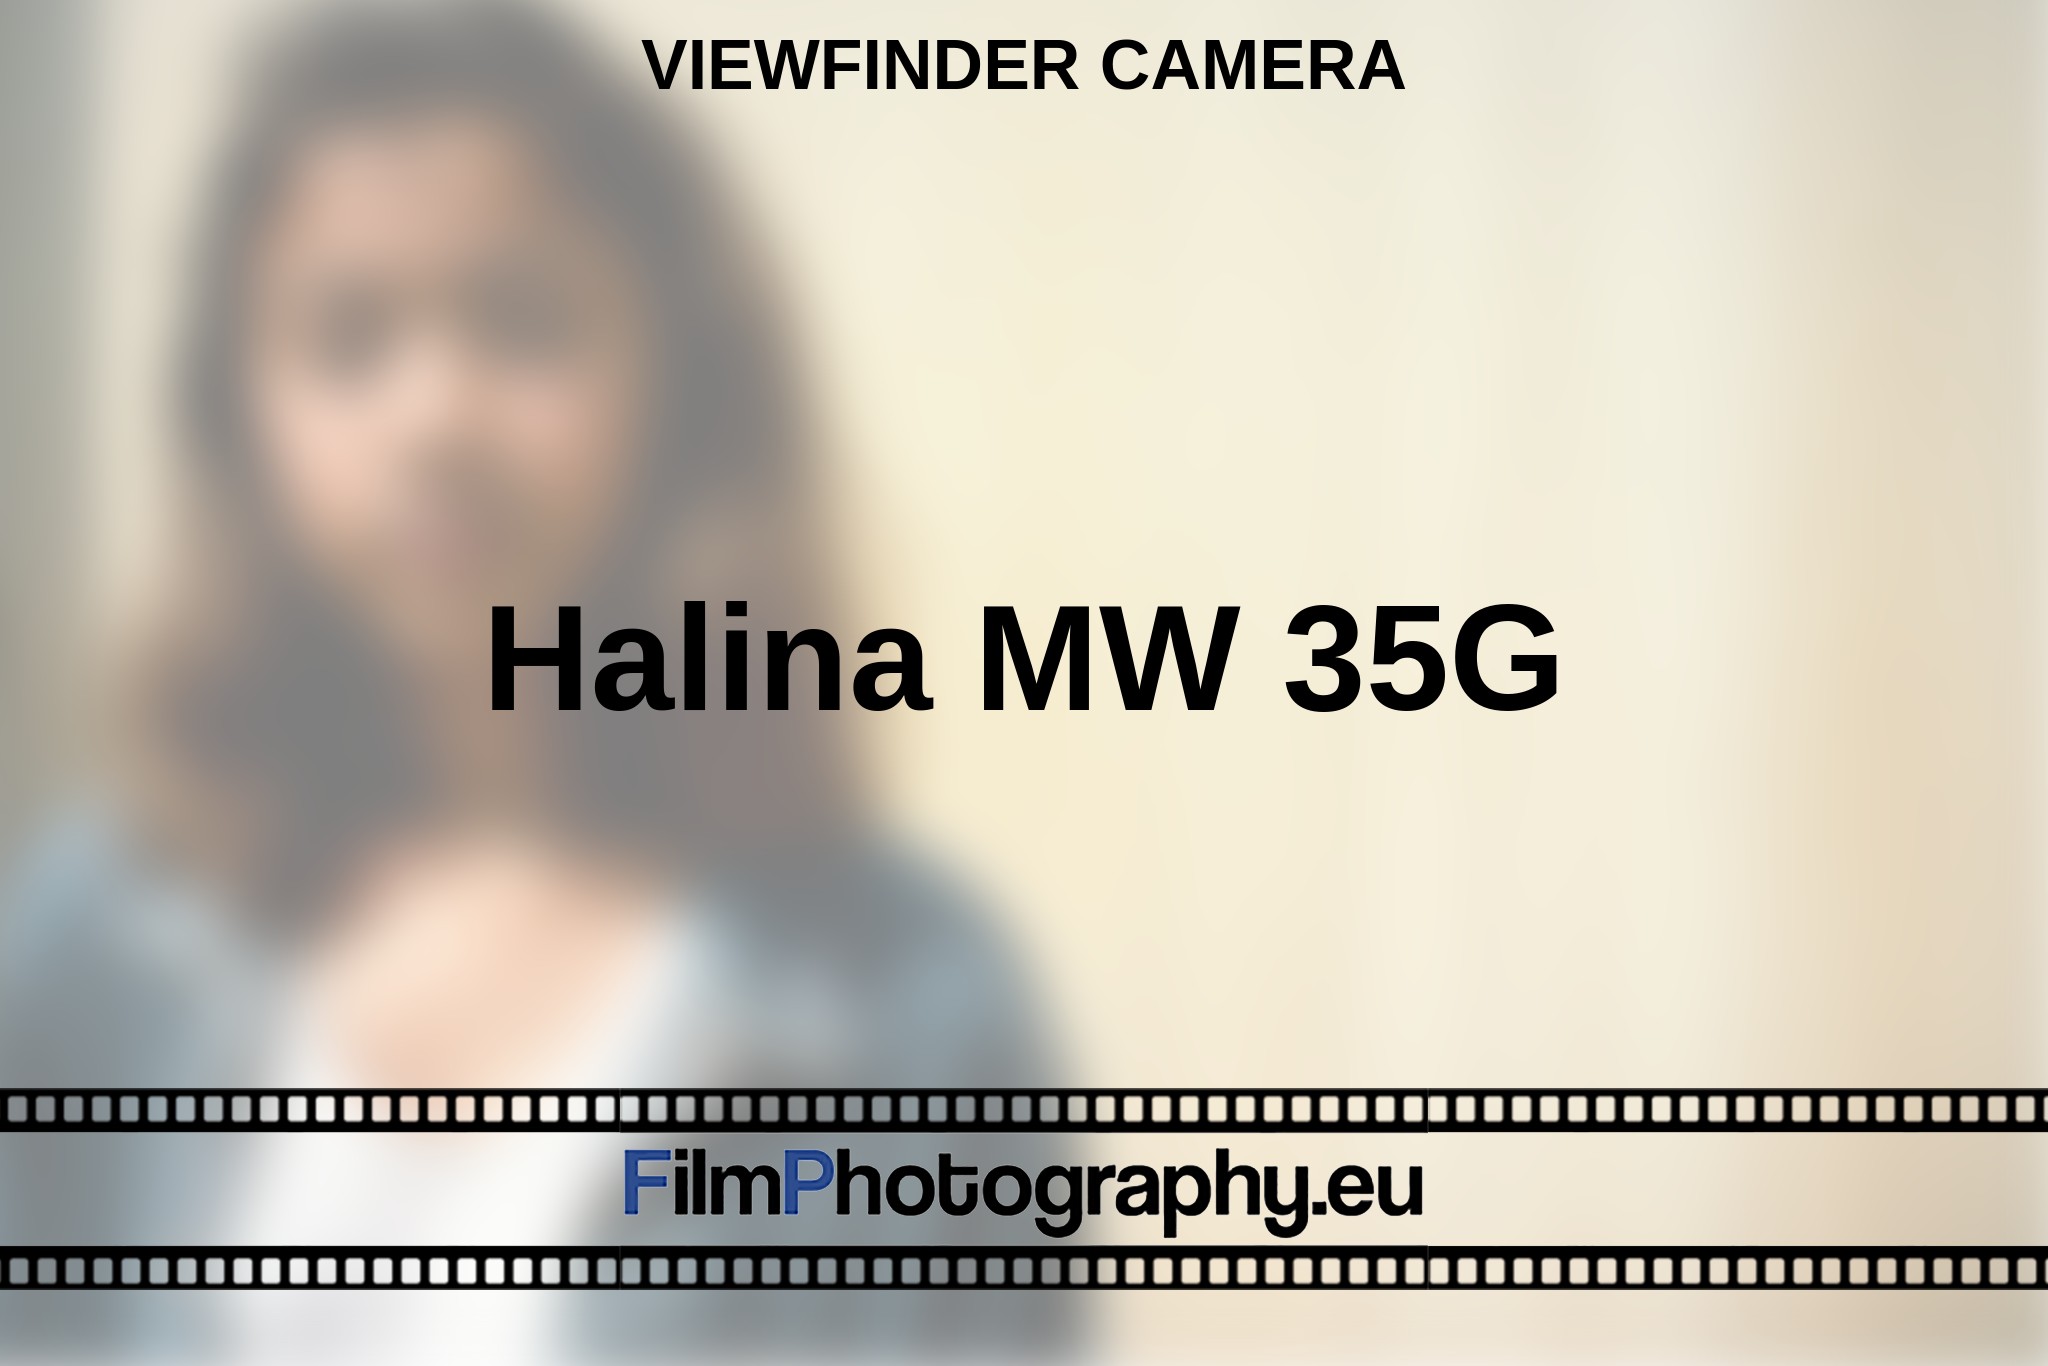 halina-mw-35g-viewfinder-camera-bnv.jpg